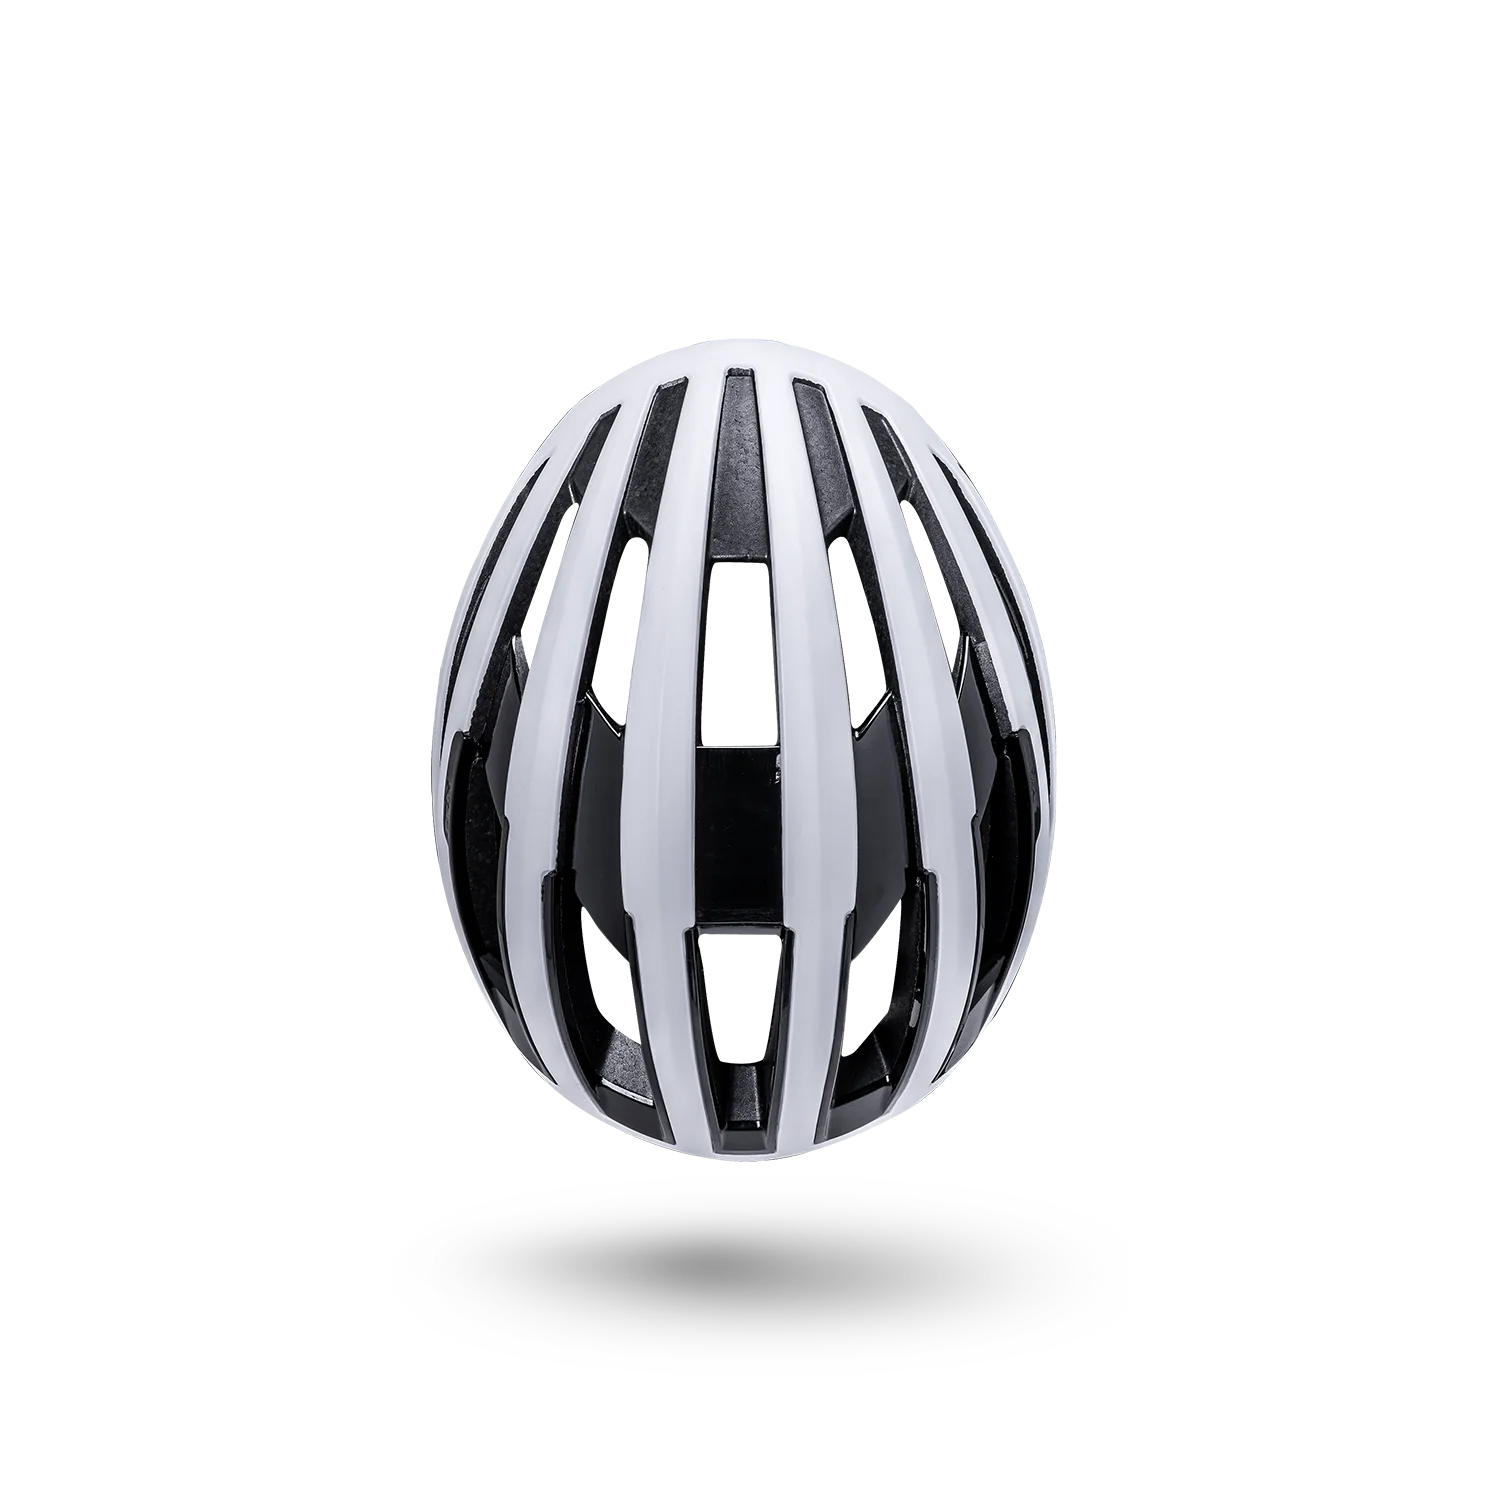 Kali Grit 2.0 Bicycle Helmet (3 Colors)